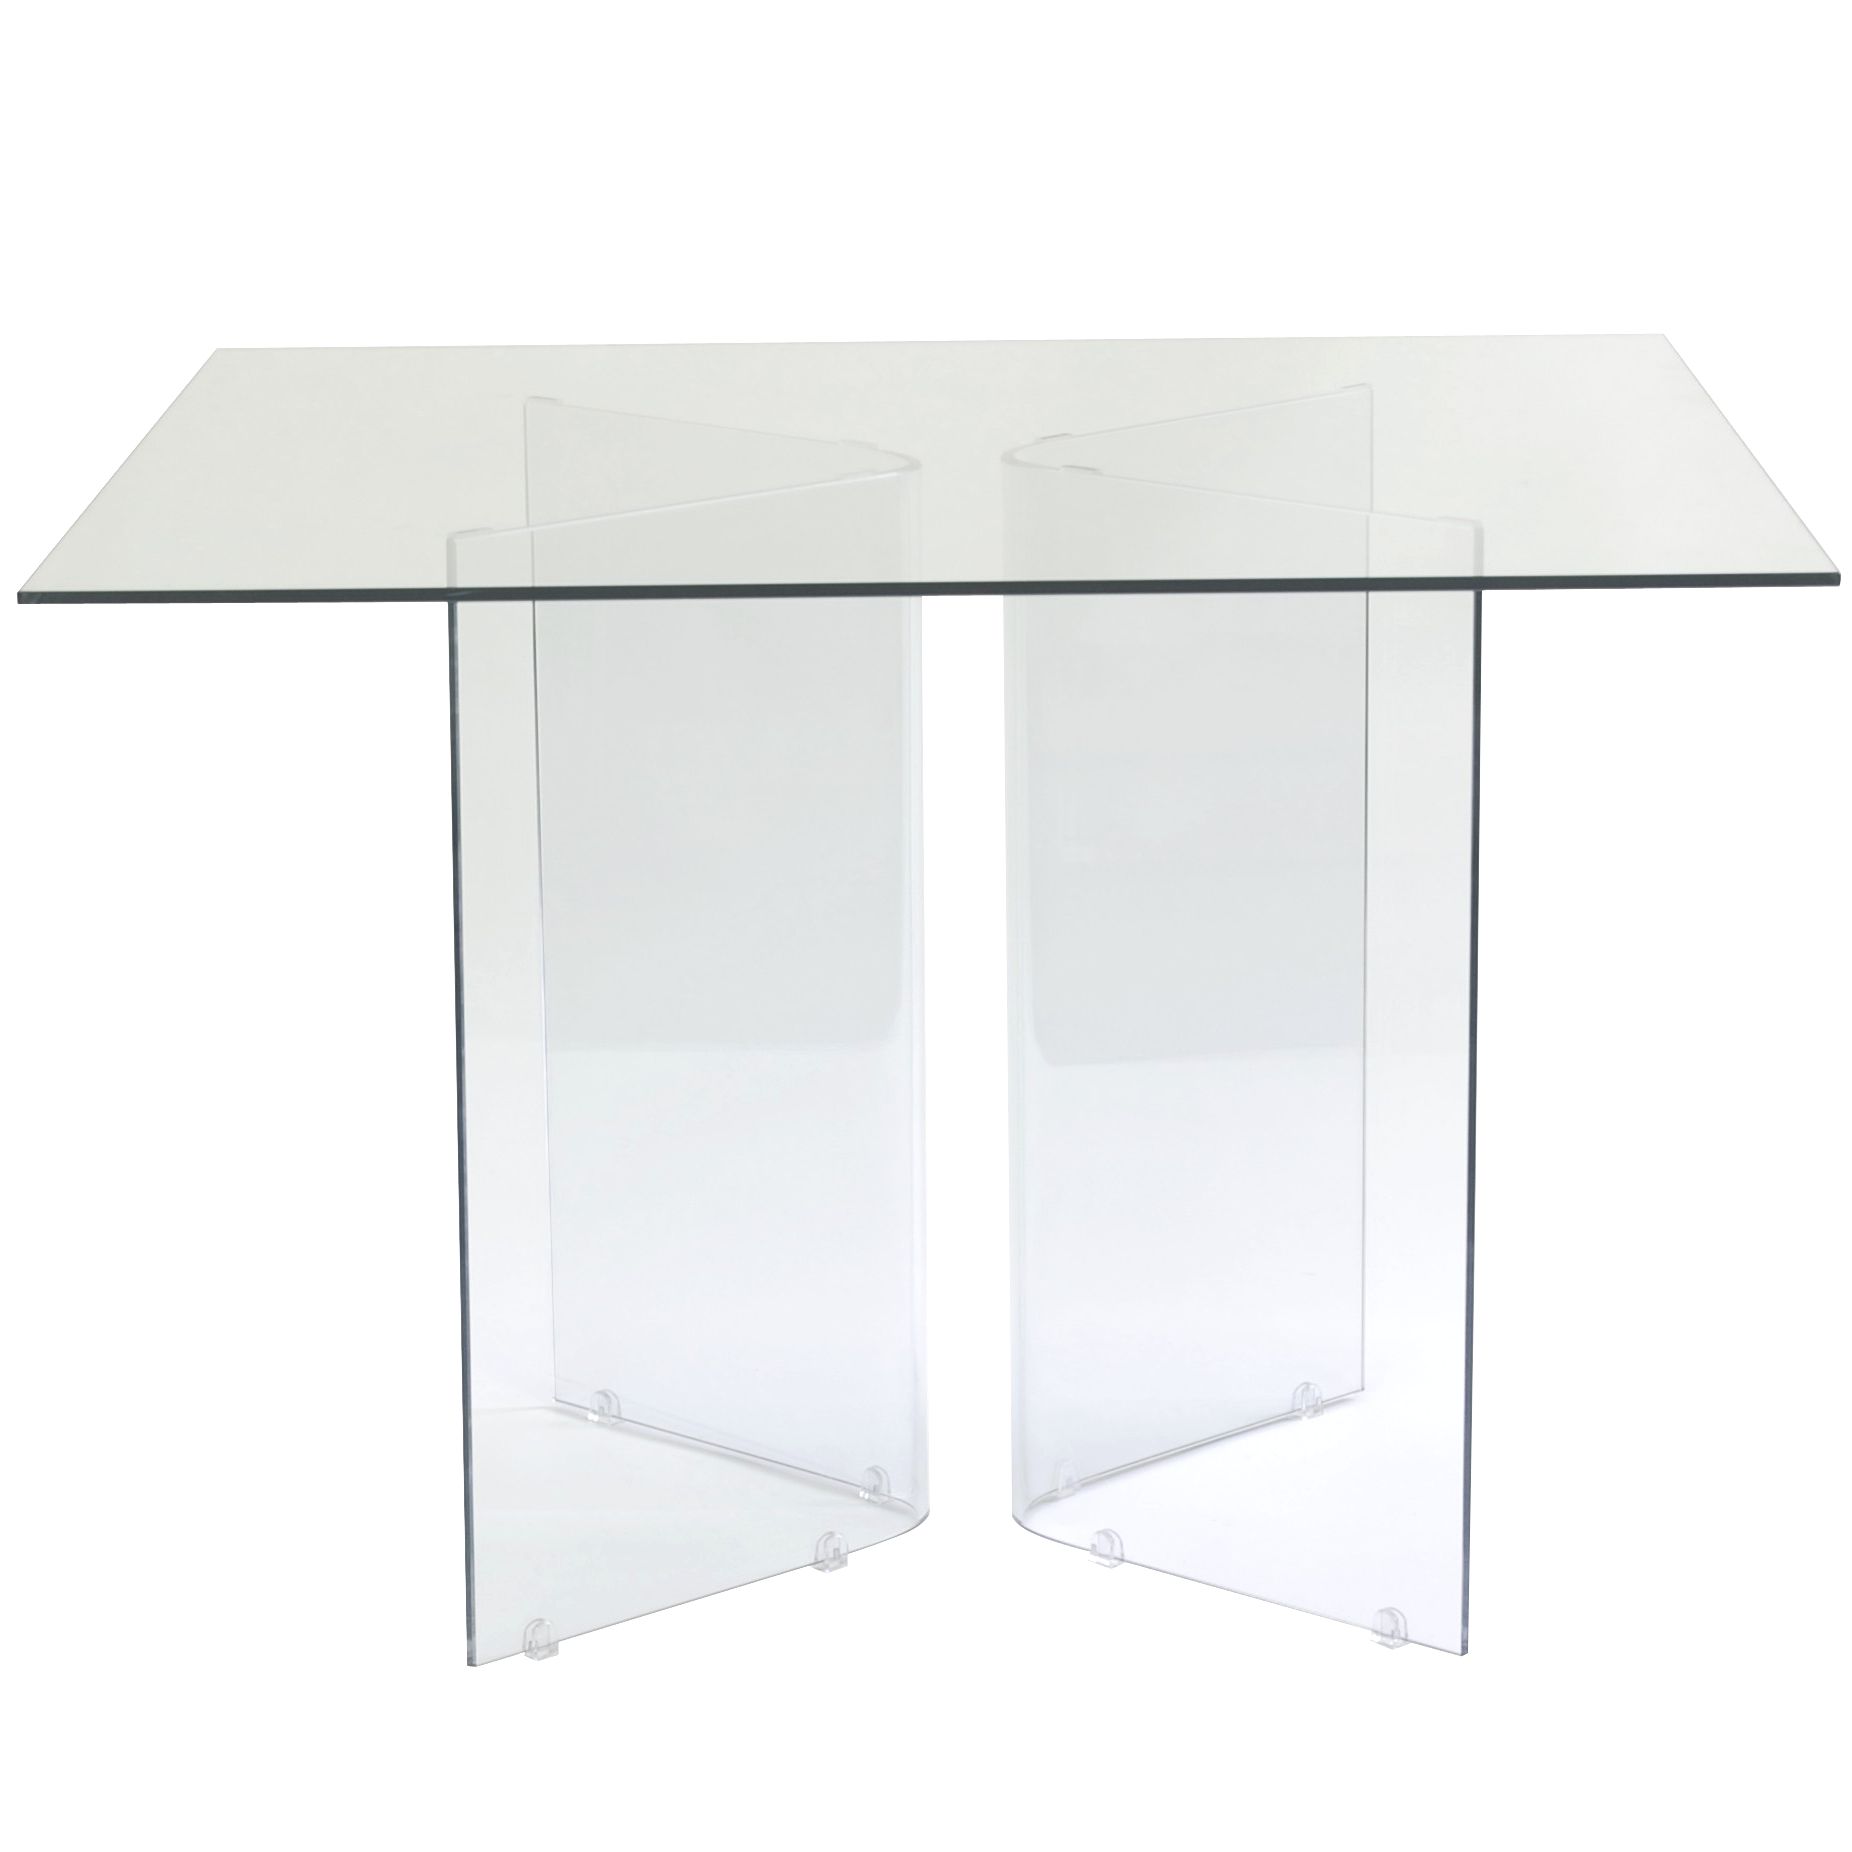 John Lewis Apollo Square Table, 130cm